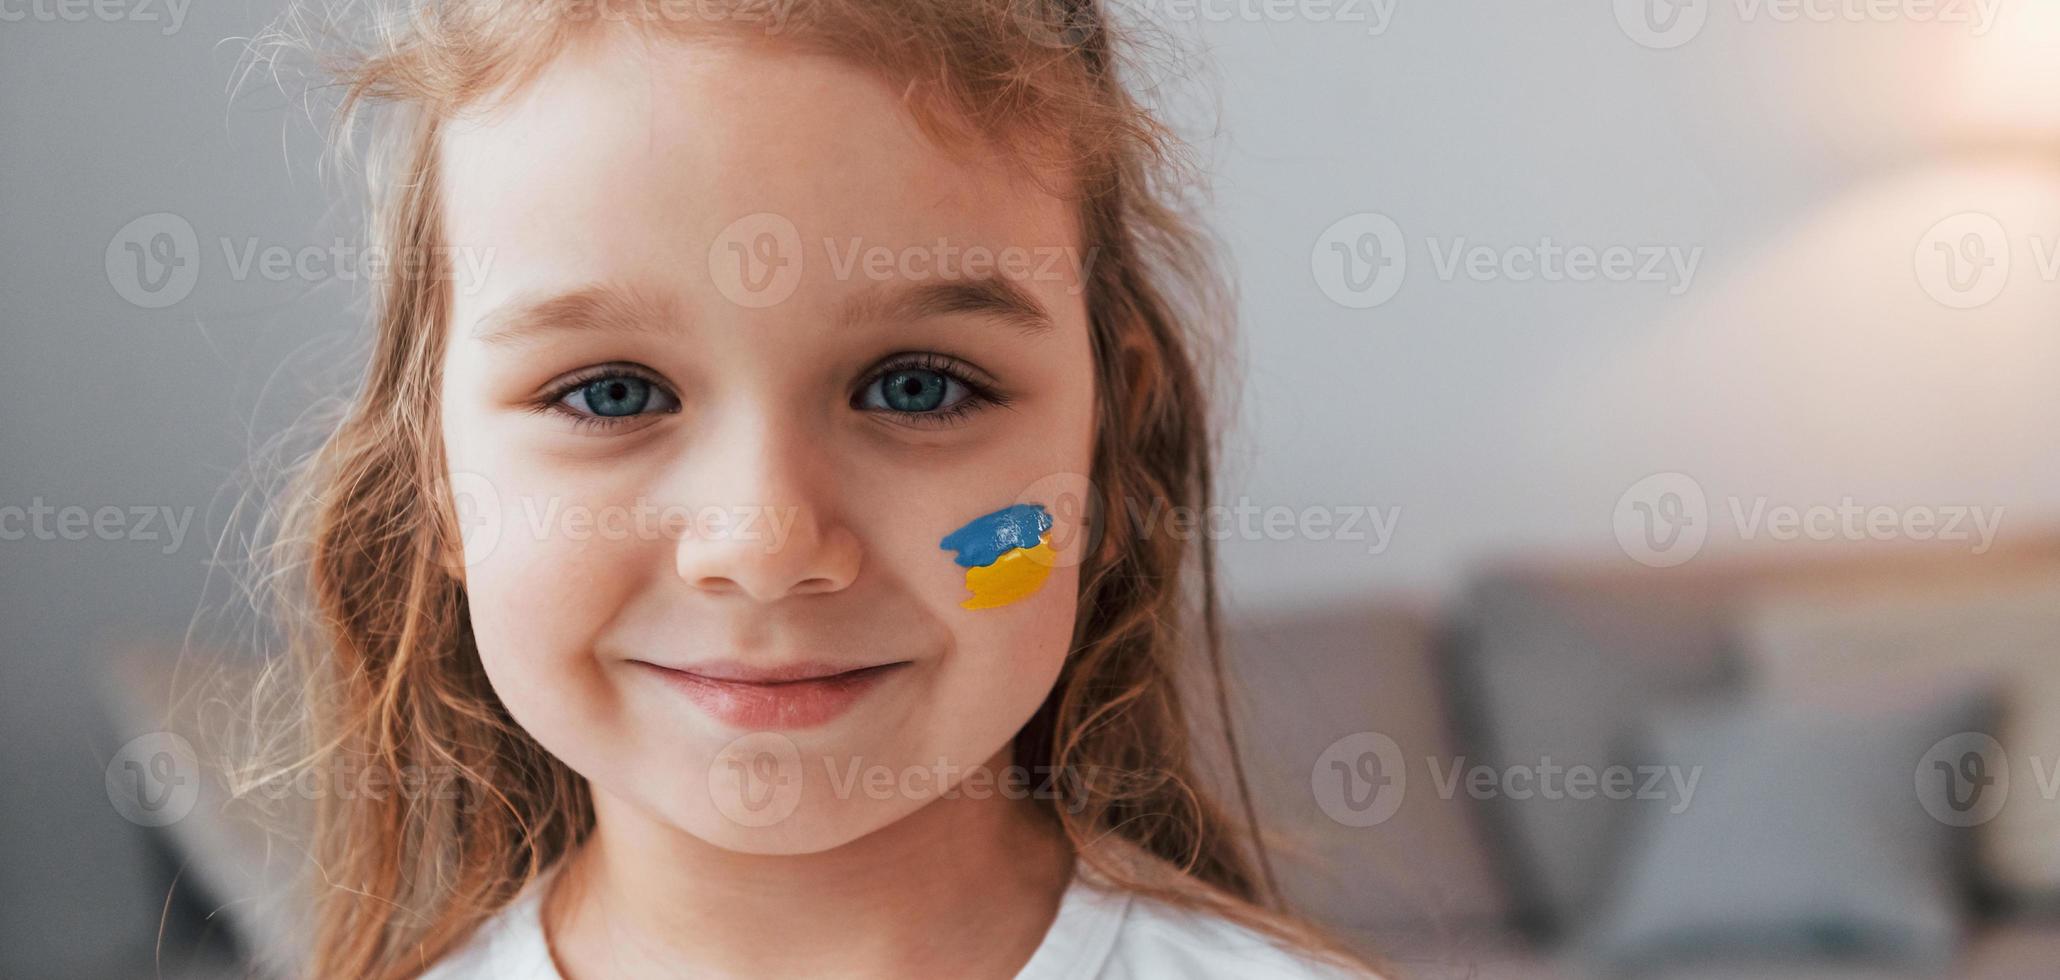 lächeln und gute Laune haben. Porträt eines kleinen Mädchens mit ukrainischer Flagge im Gesicht foto